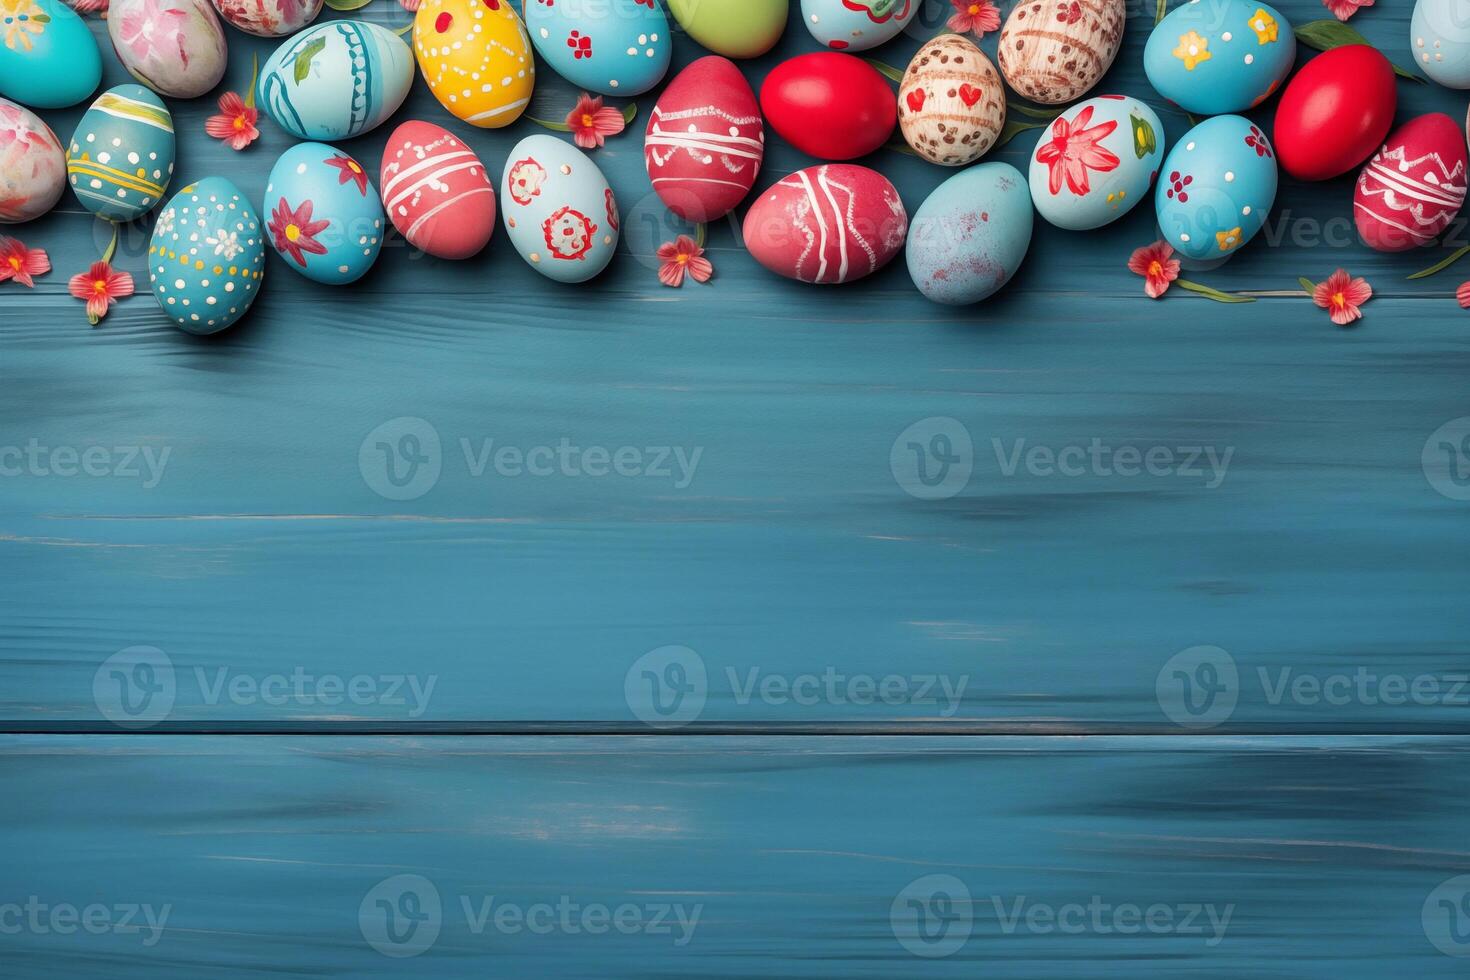 Pascua de Resurrección fiesta celebracion bandera saludo tarjeta bandera - marco hecho de pintado Pascua de Resurrección huevos en azul de madera mesa textura, parte superior vista, plano laico foto